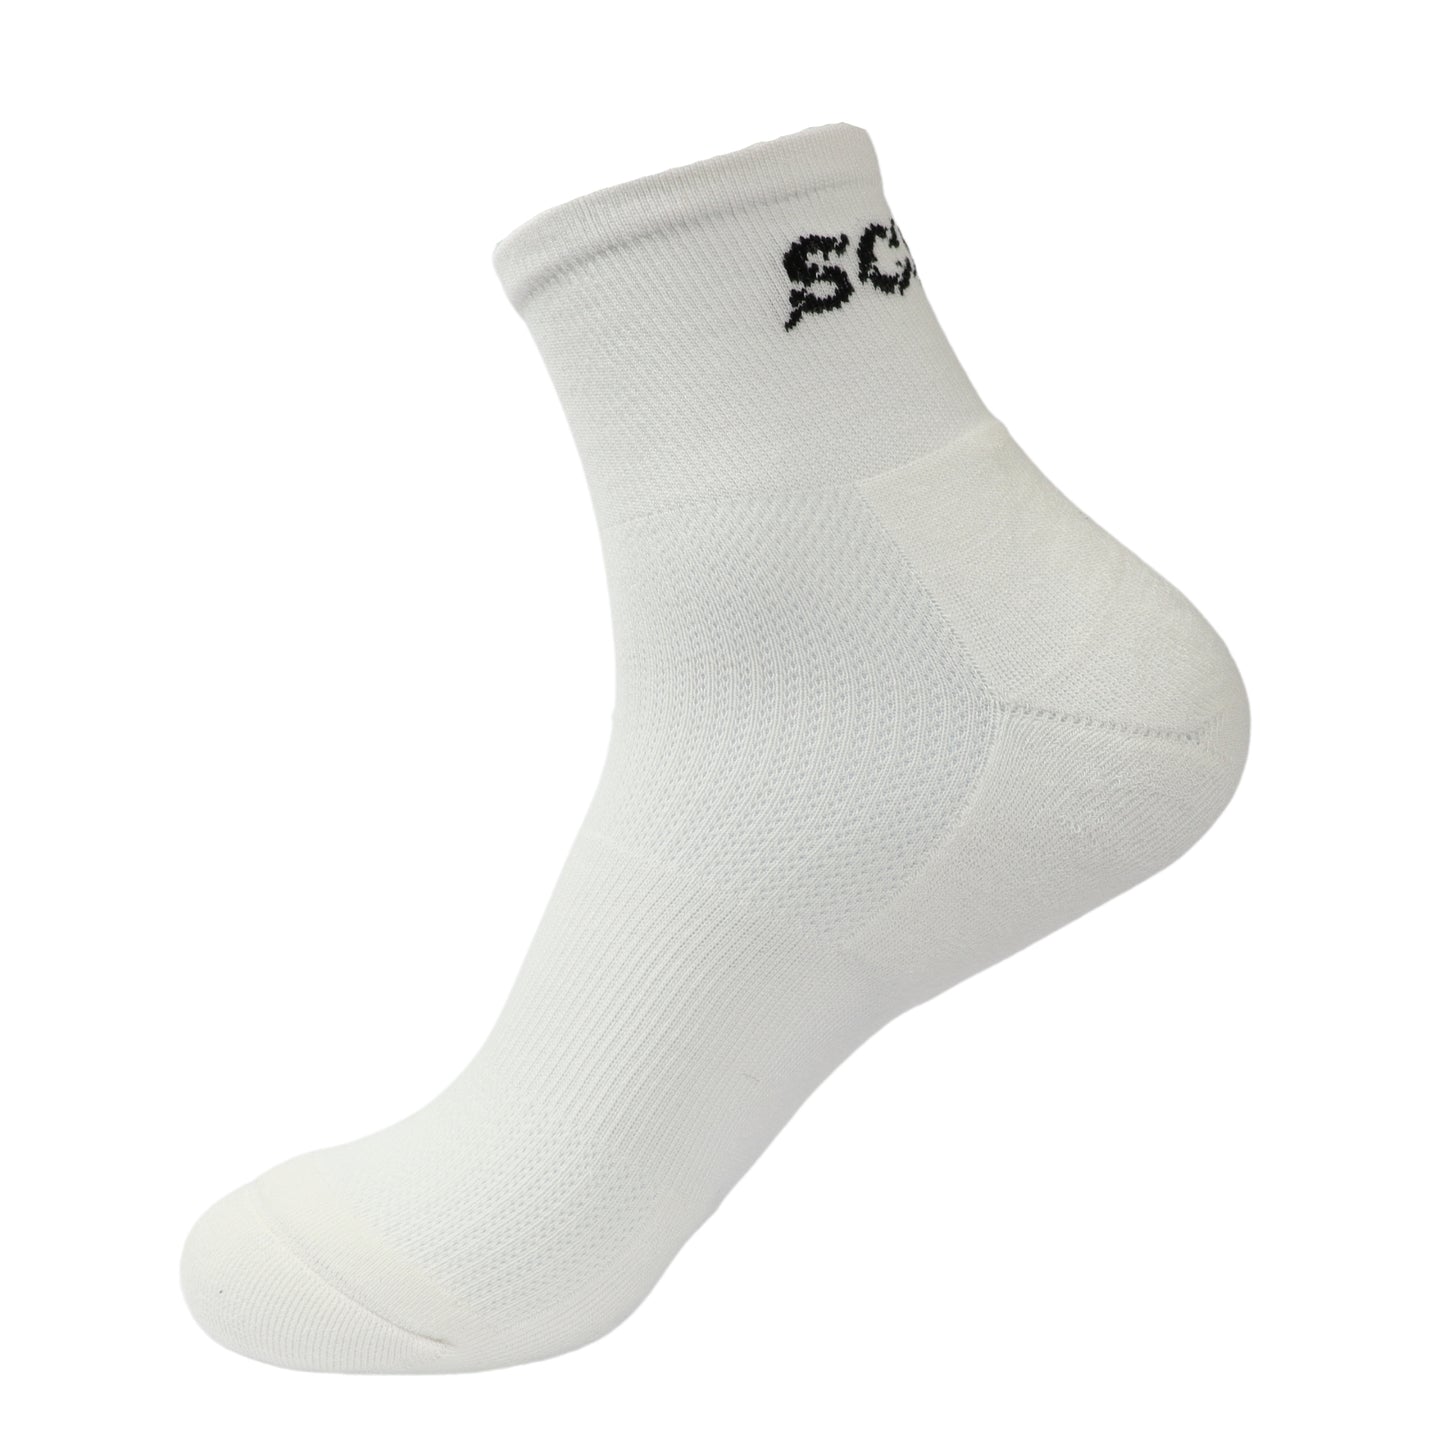 White quarter sport socks | Pack of 3